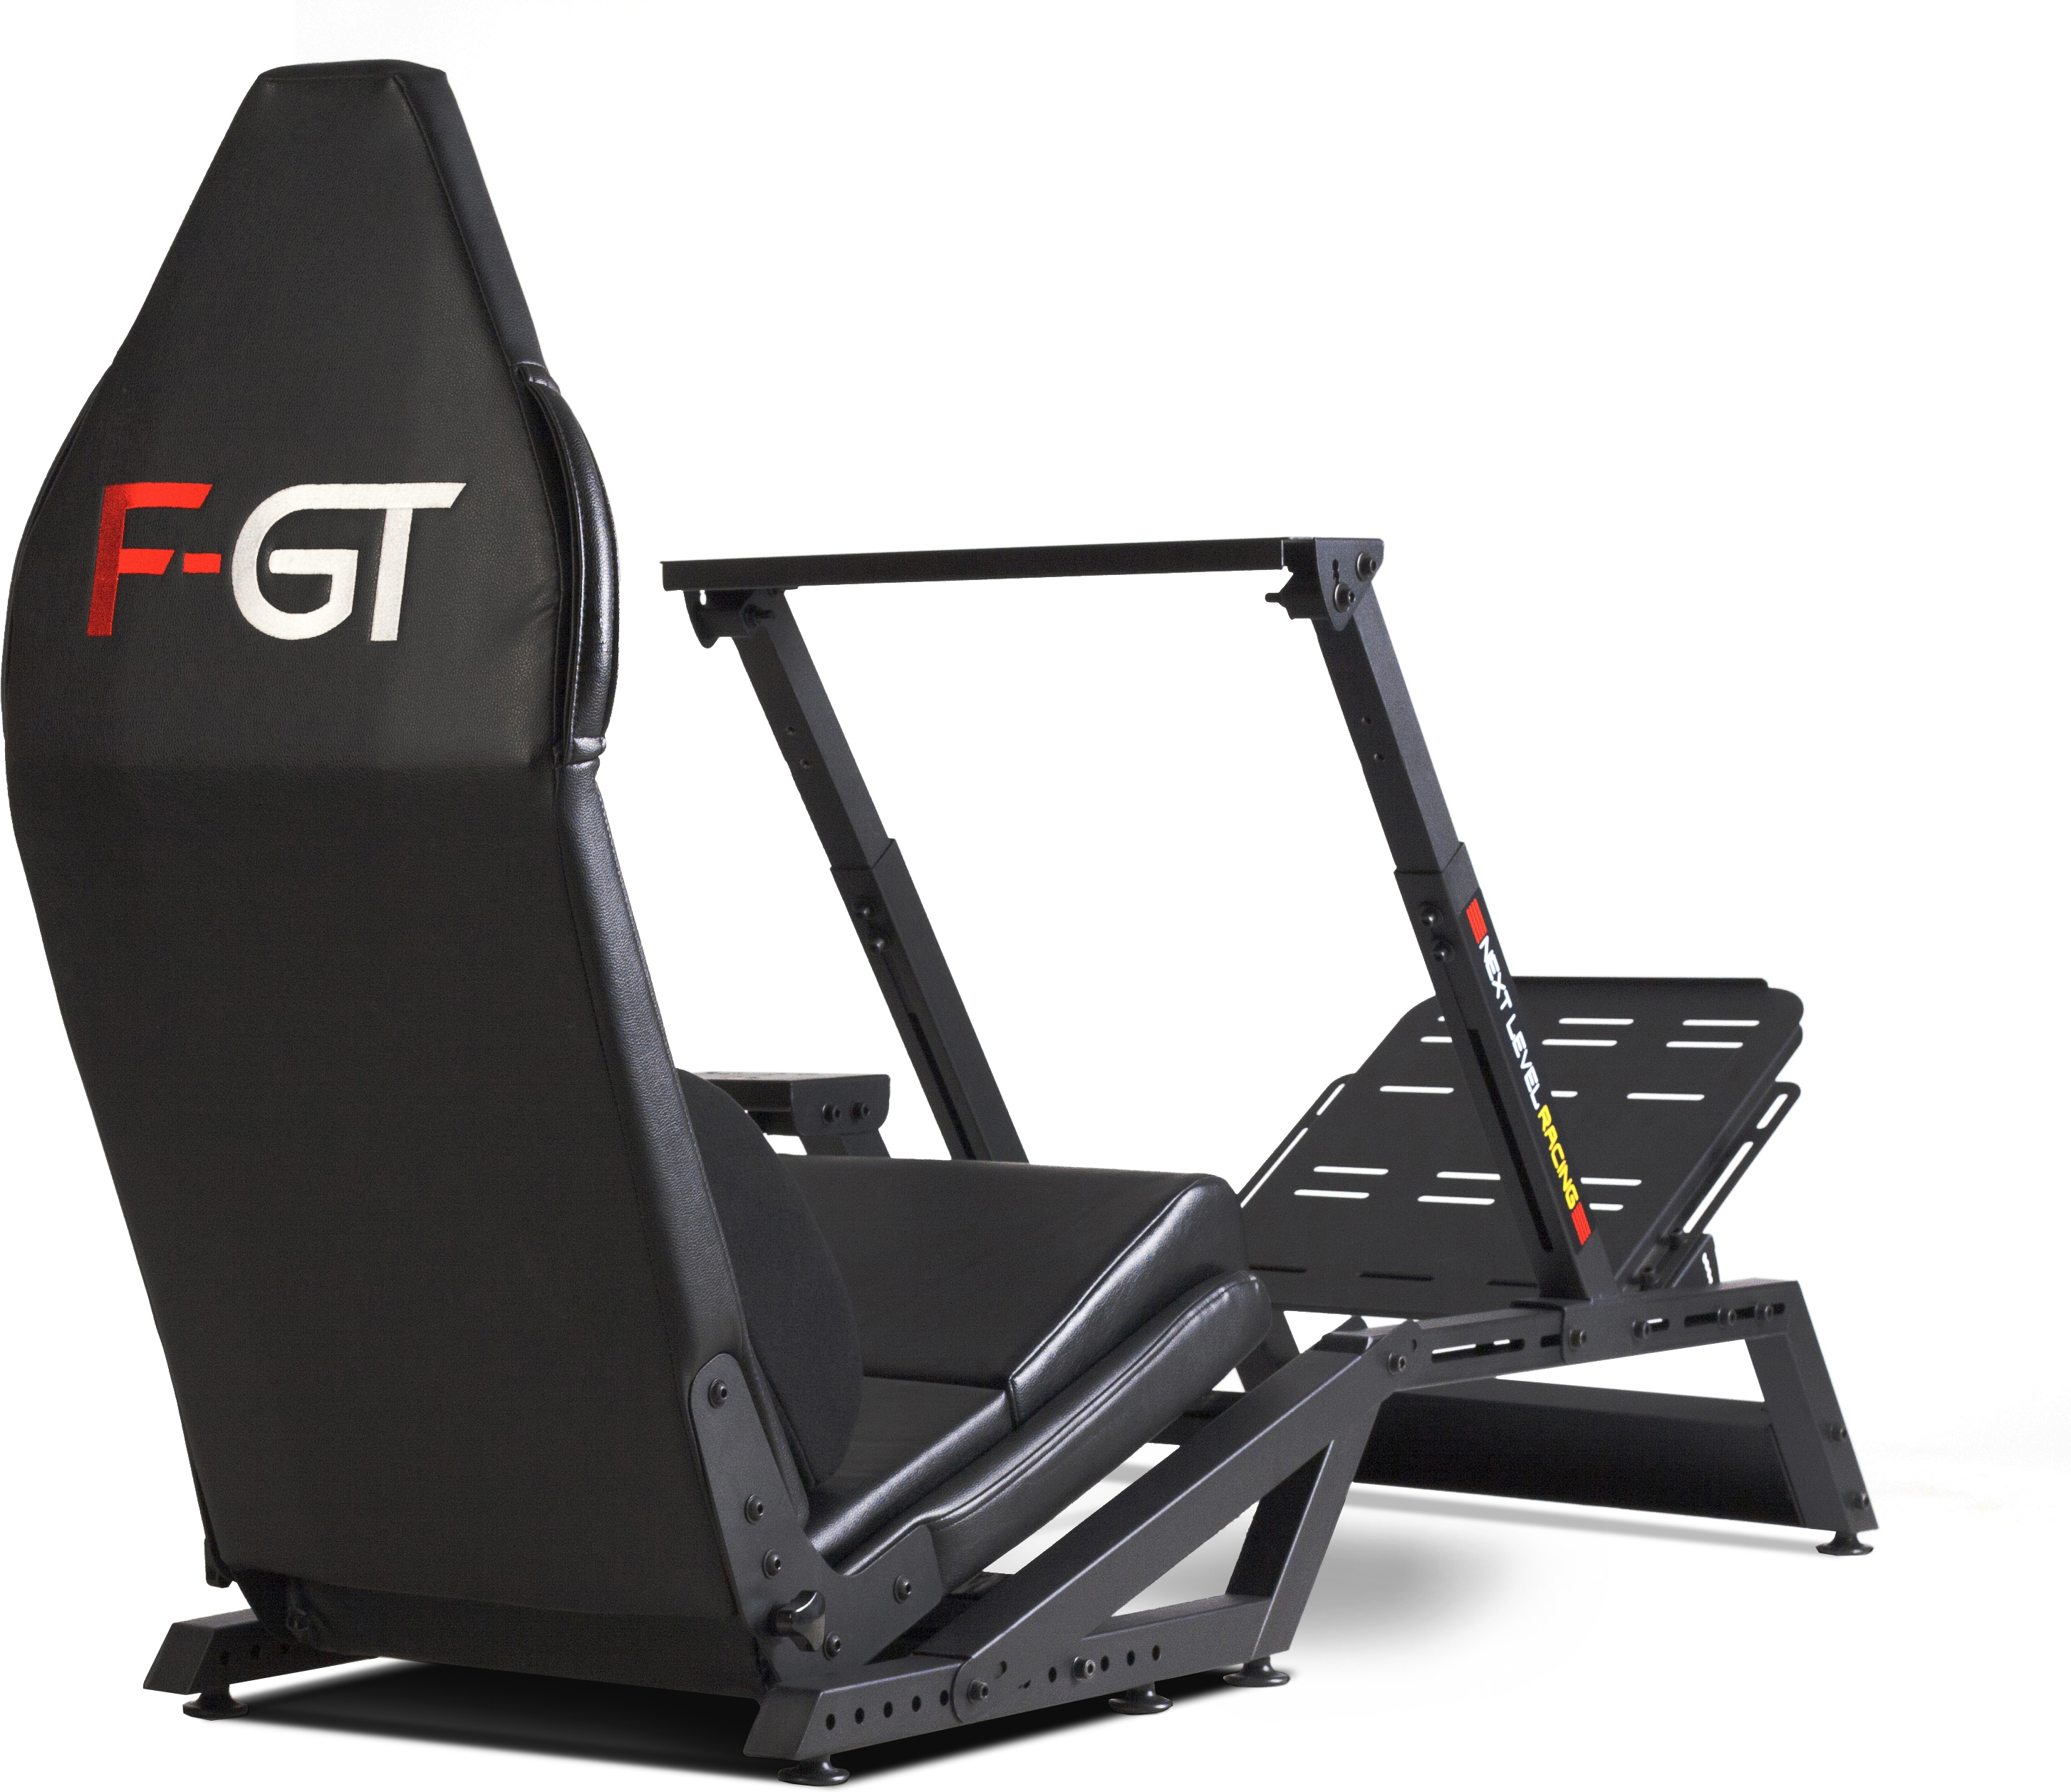 Кокпит gt Racing. Next Level Racing gt Lite Foldable Simulator Cockpit - Black. Кокпит съемный gr. Level race